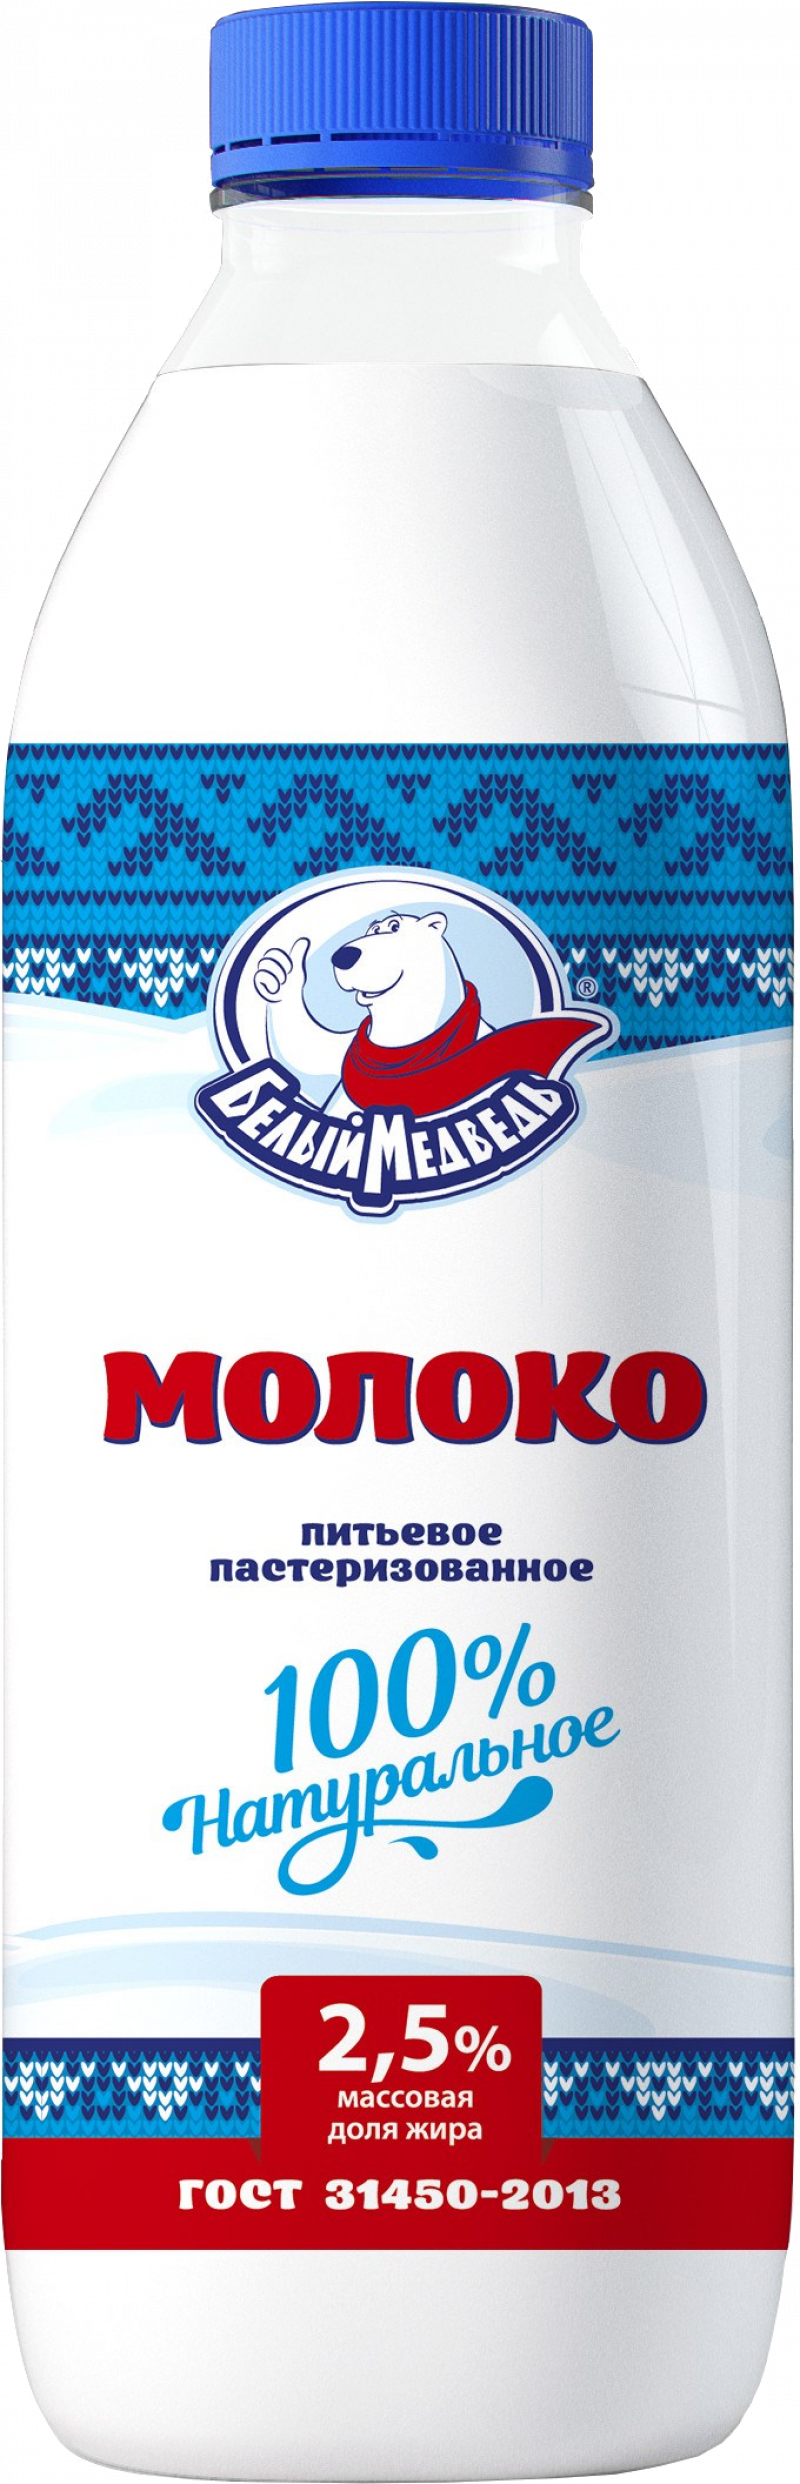 Молоко ТМ Белый Медведь 2,5% 900г